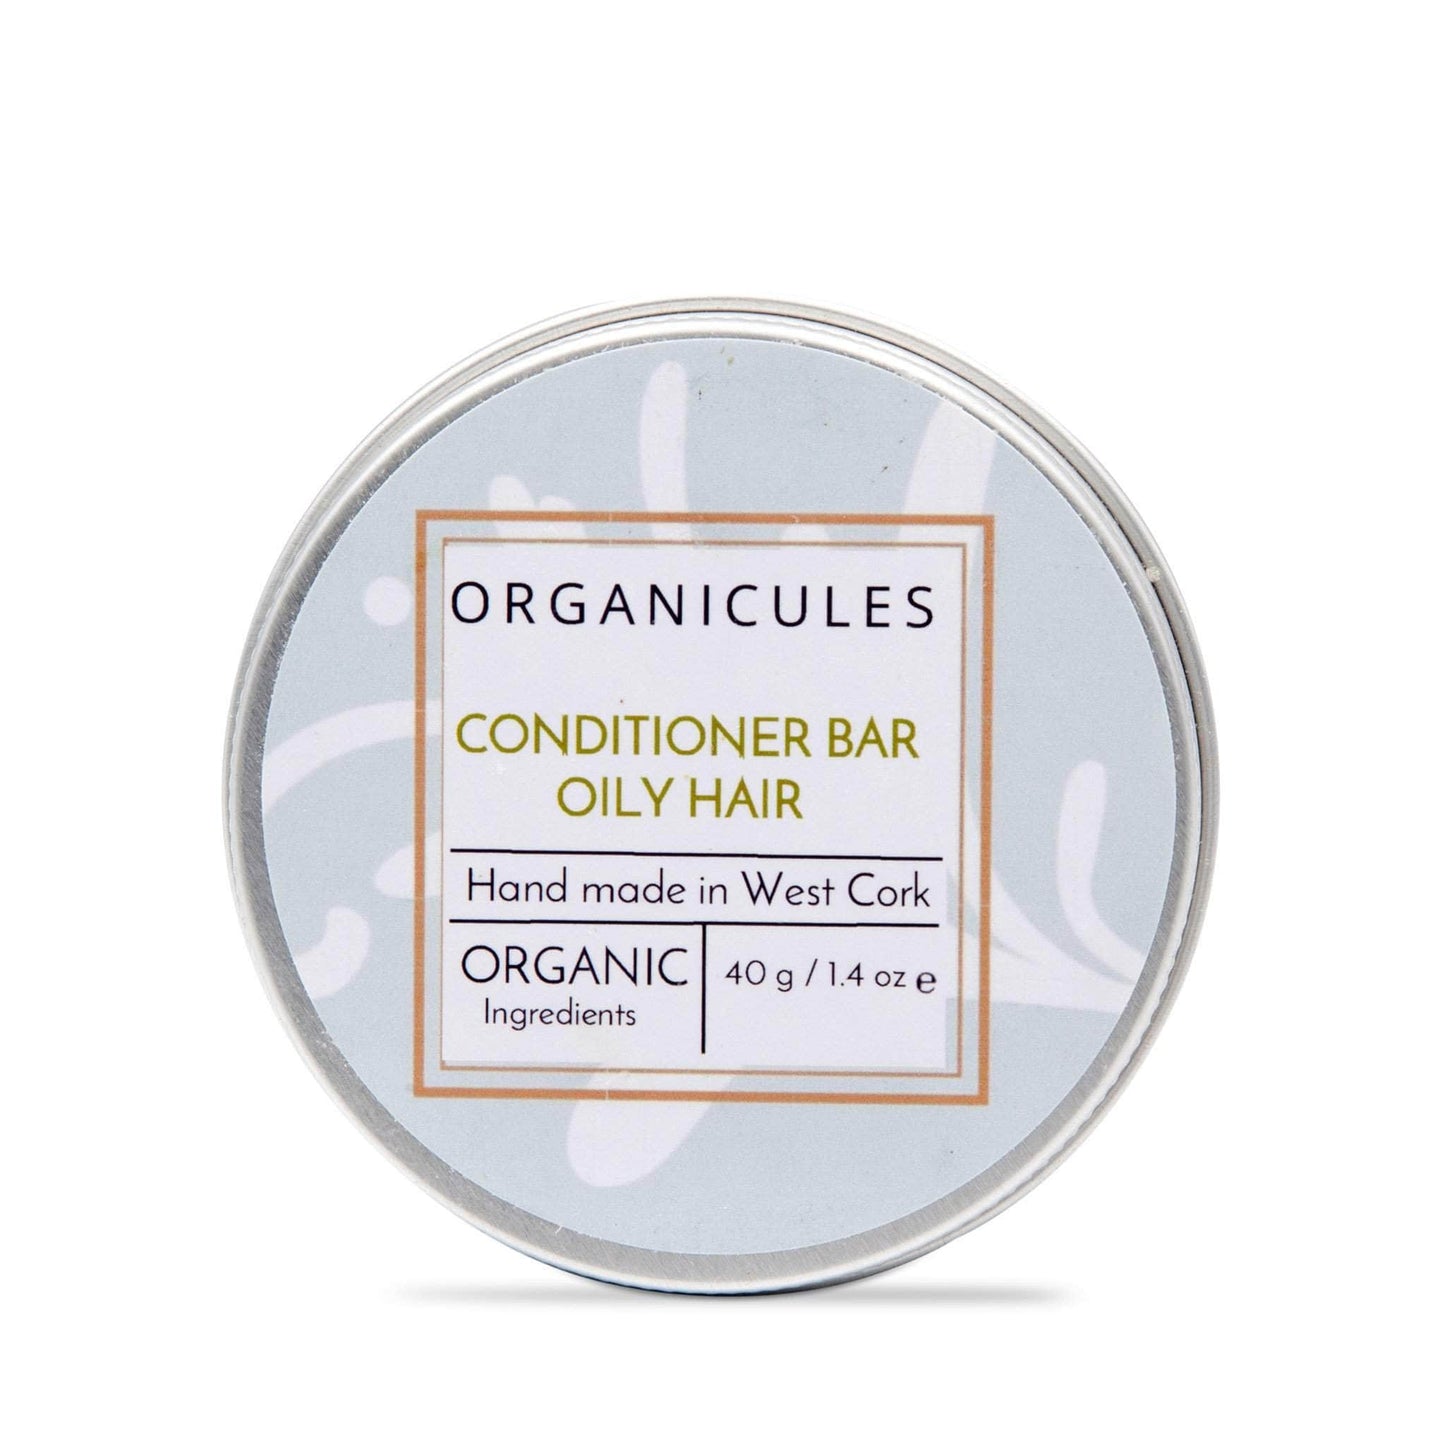 Organicules Conditioner Organicules Conditioner Bar in Tin - For Oily Hair - Rosemary, Peppermint & Cedarwood